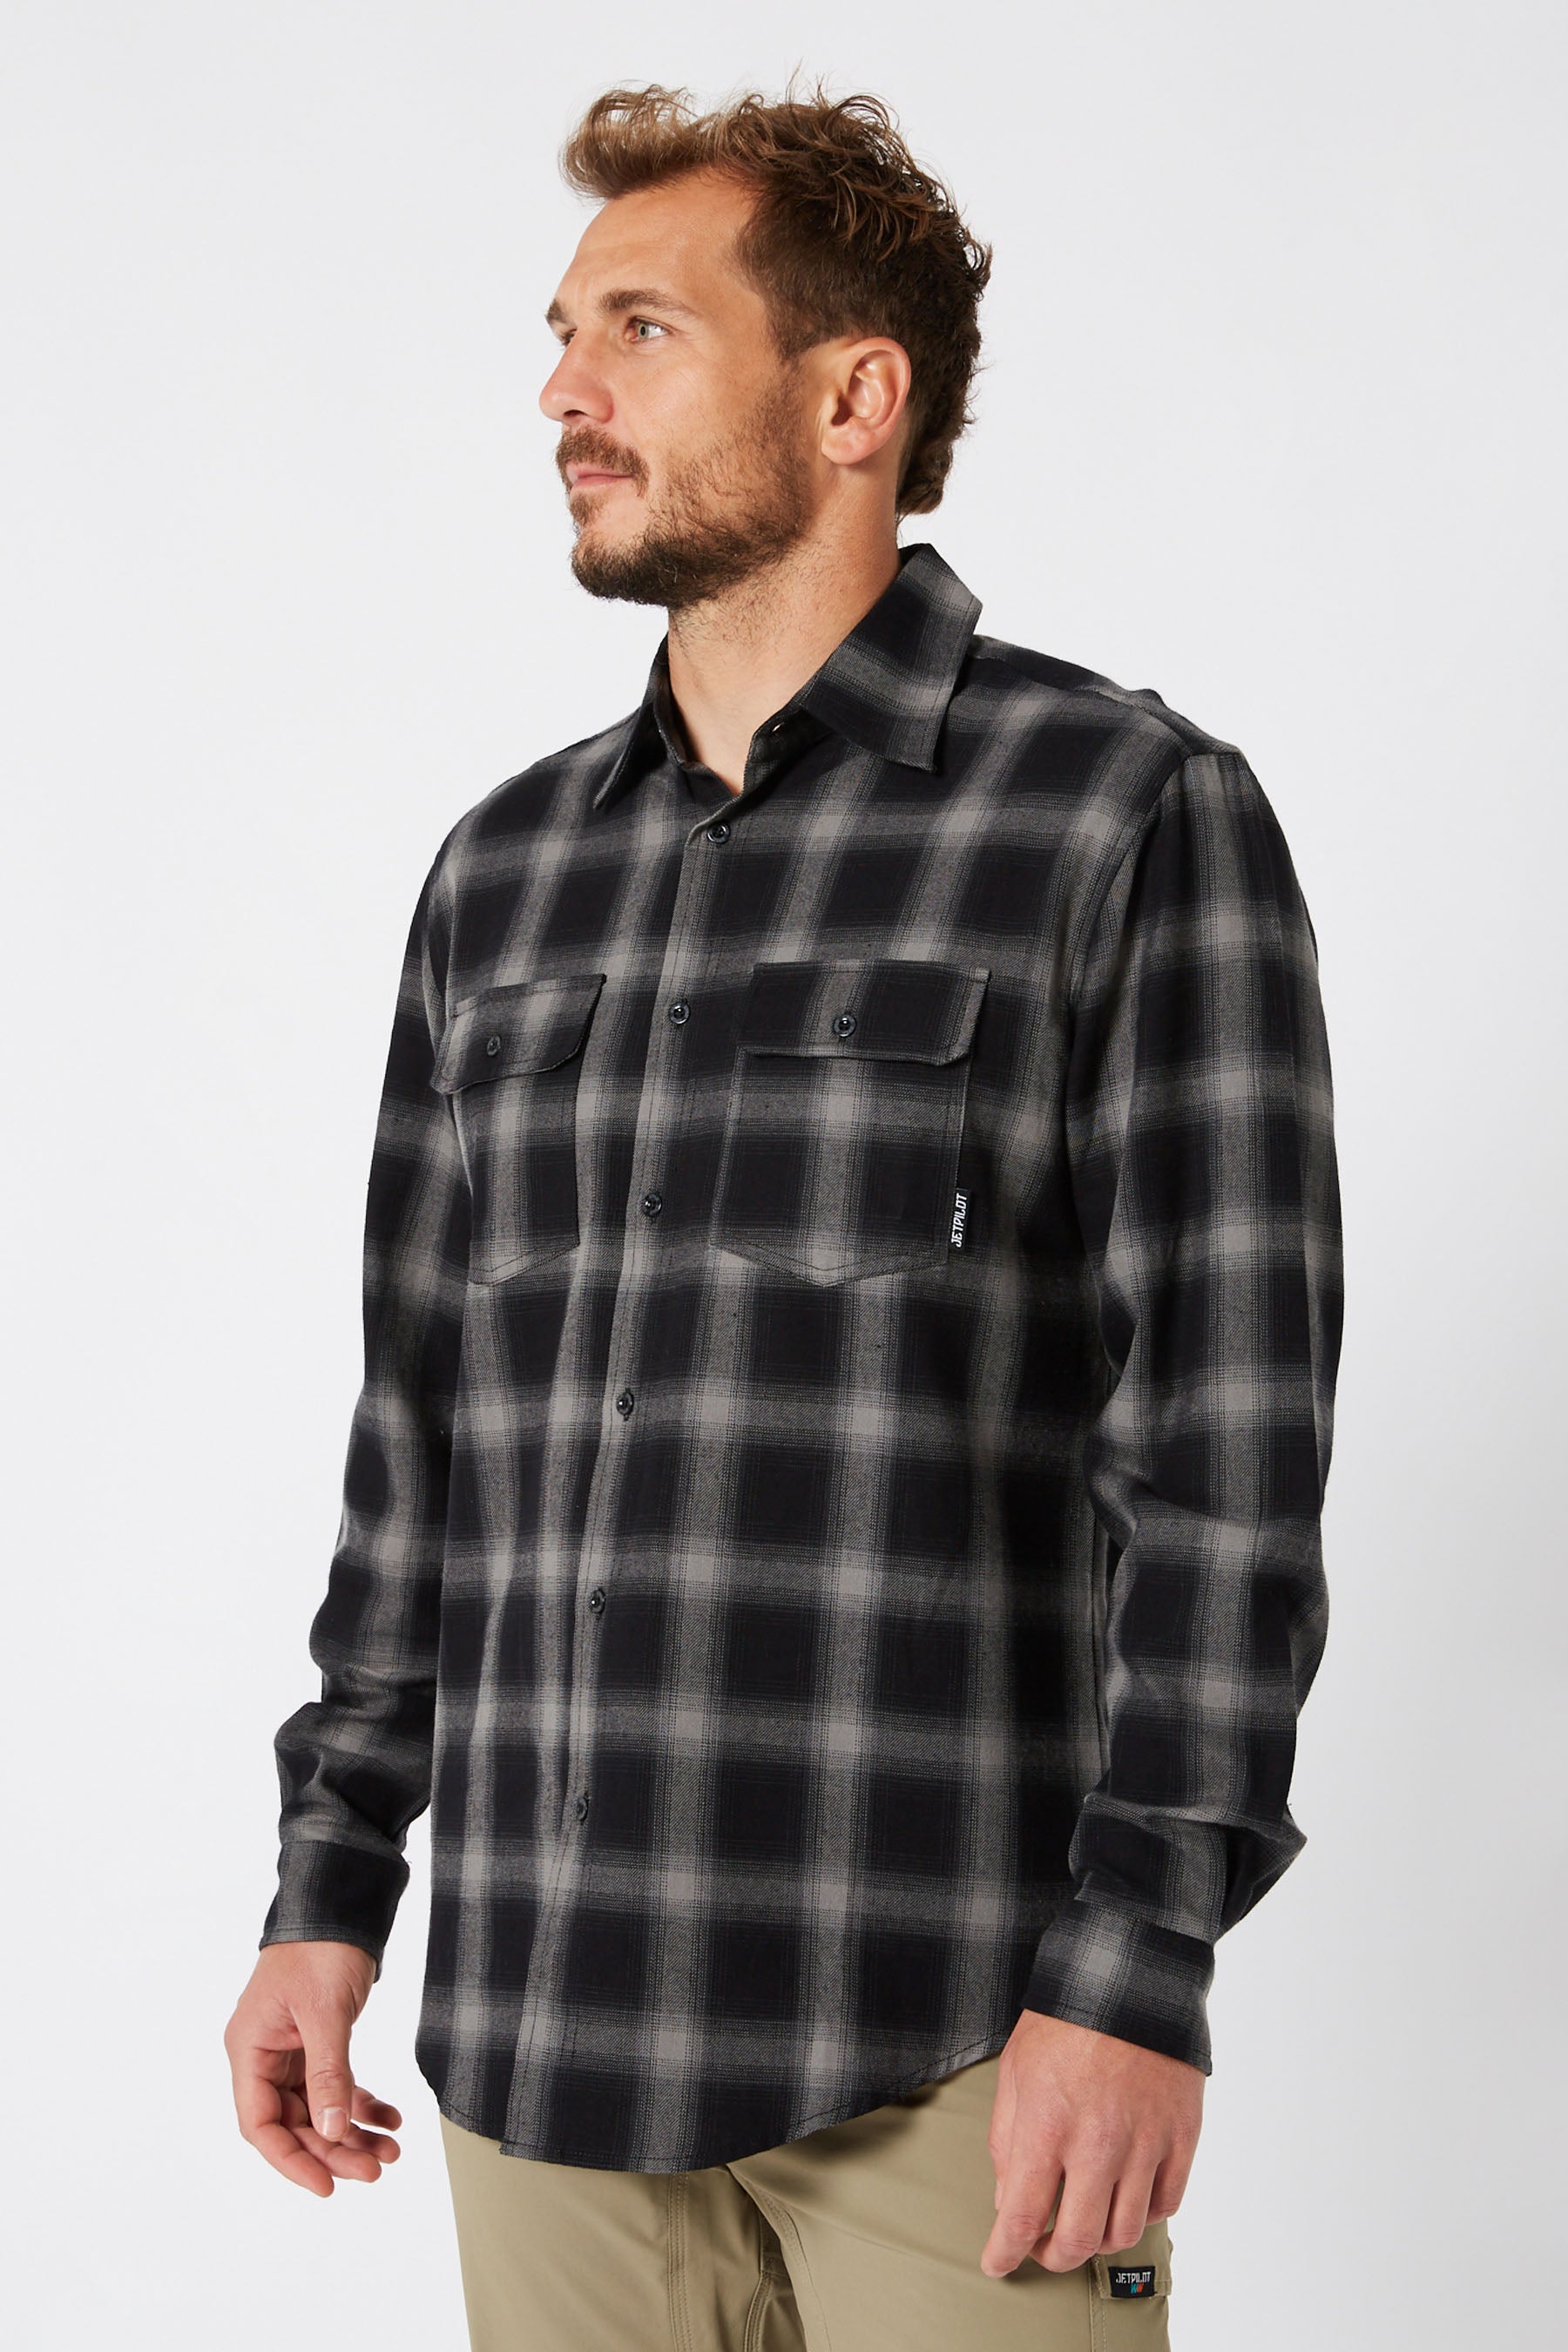 Jetpilot Mens Flannel Shirt - Black